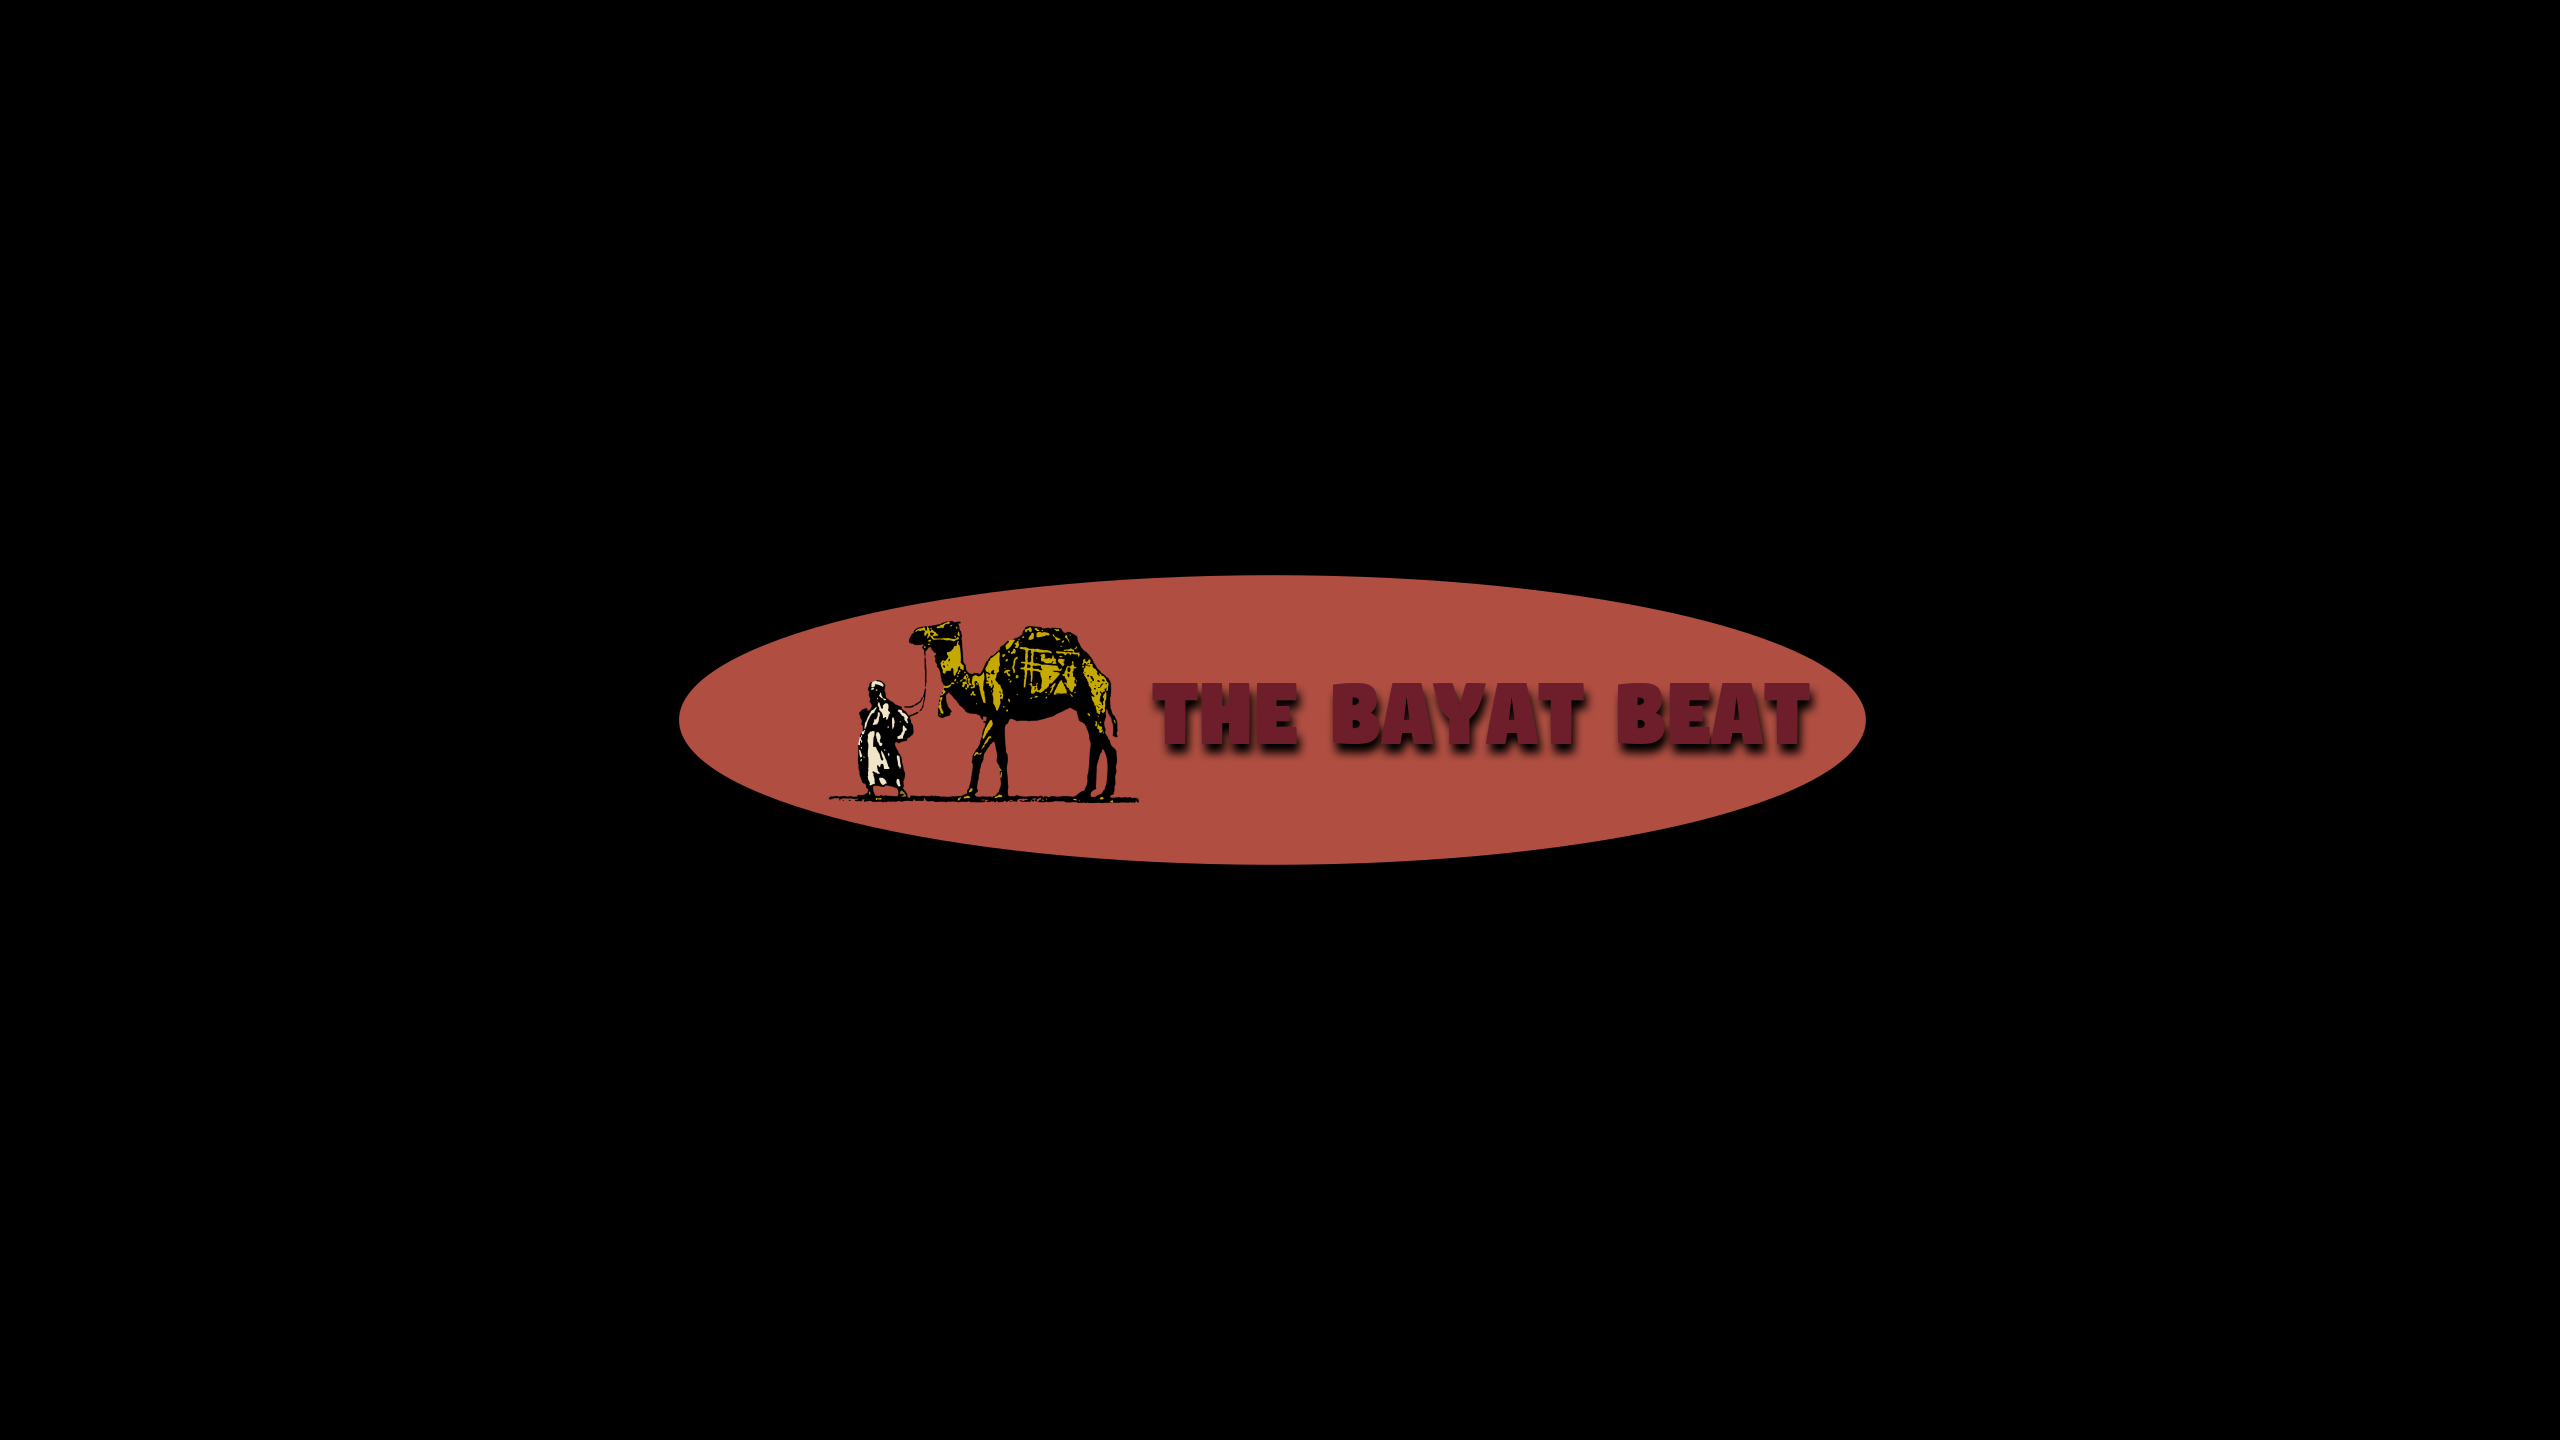 The Bayat Beat